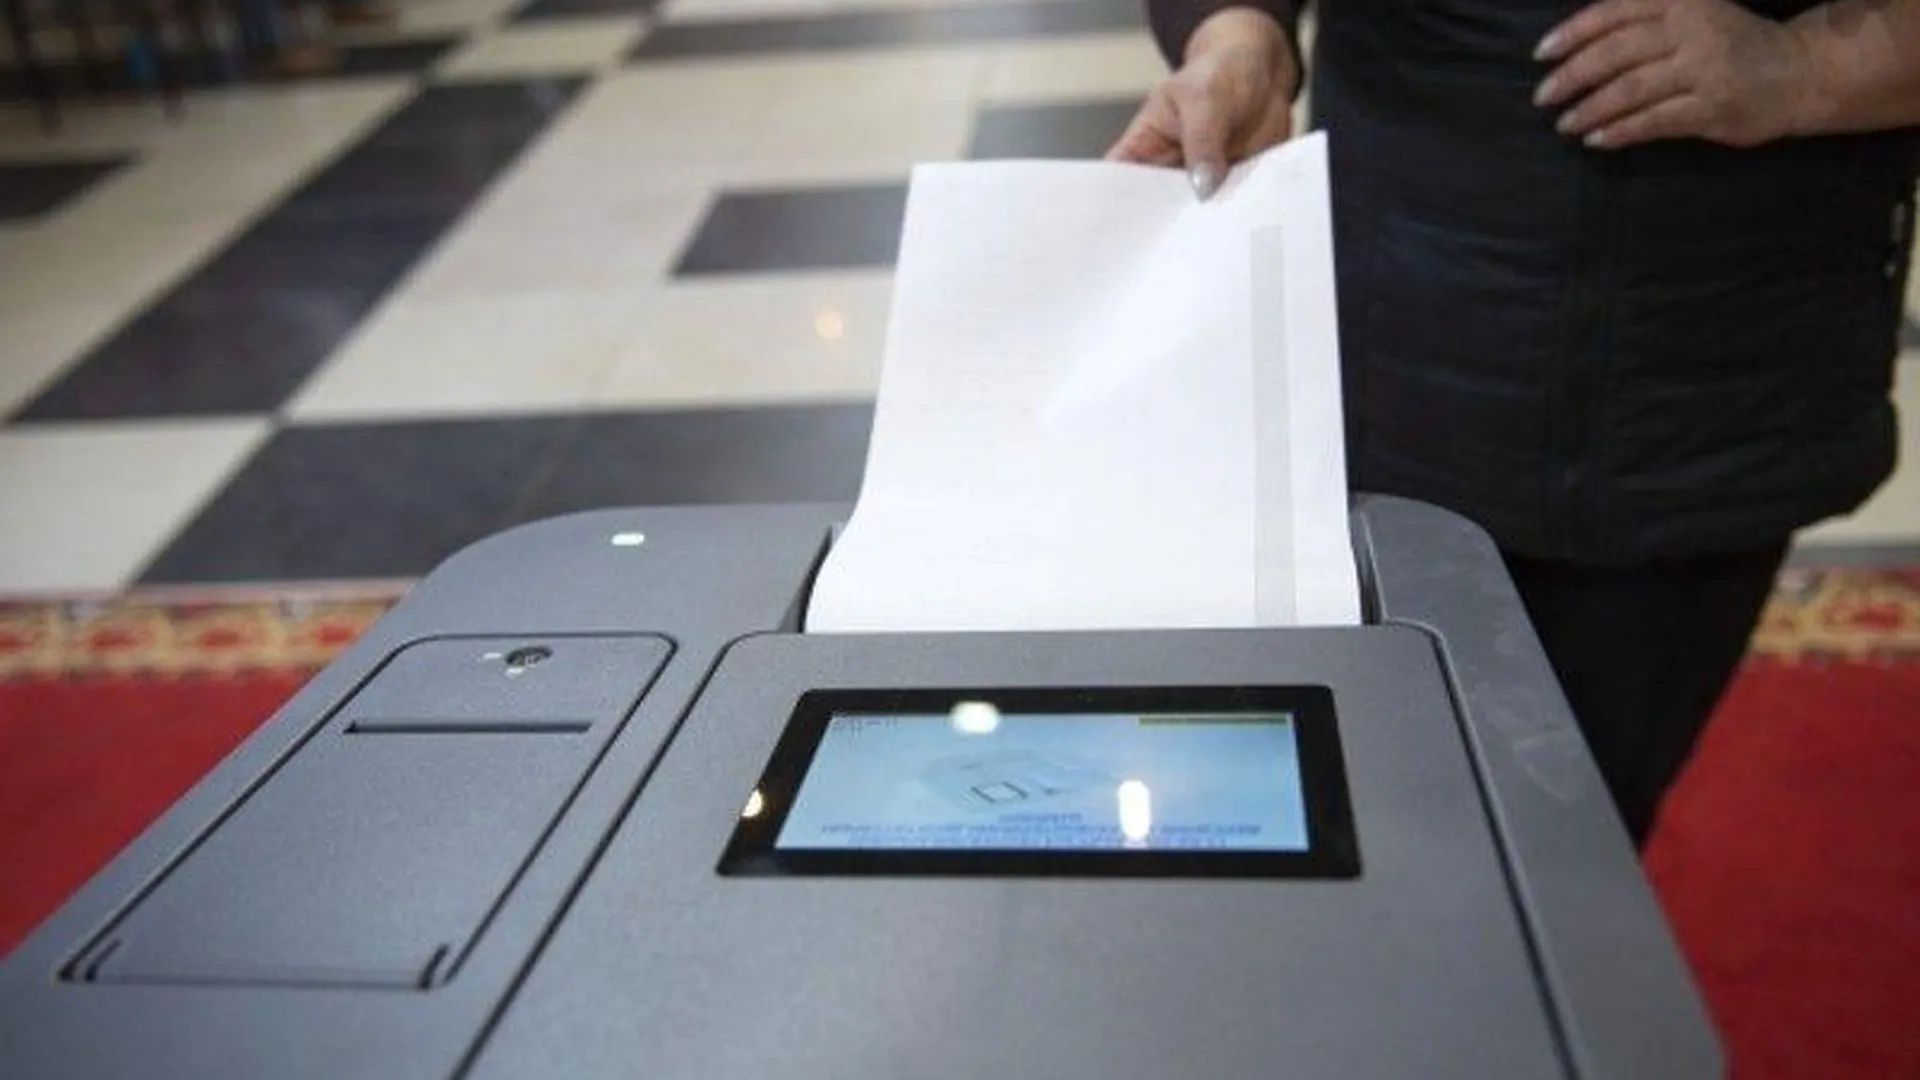 Явка на выборах в Подмосковье на 12:00 составила 6,65%